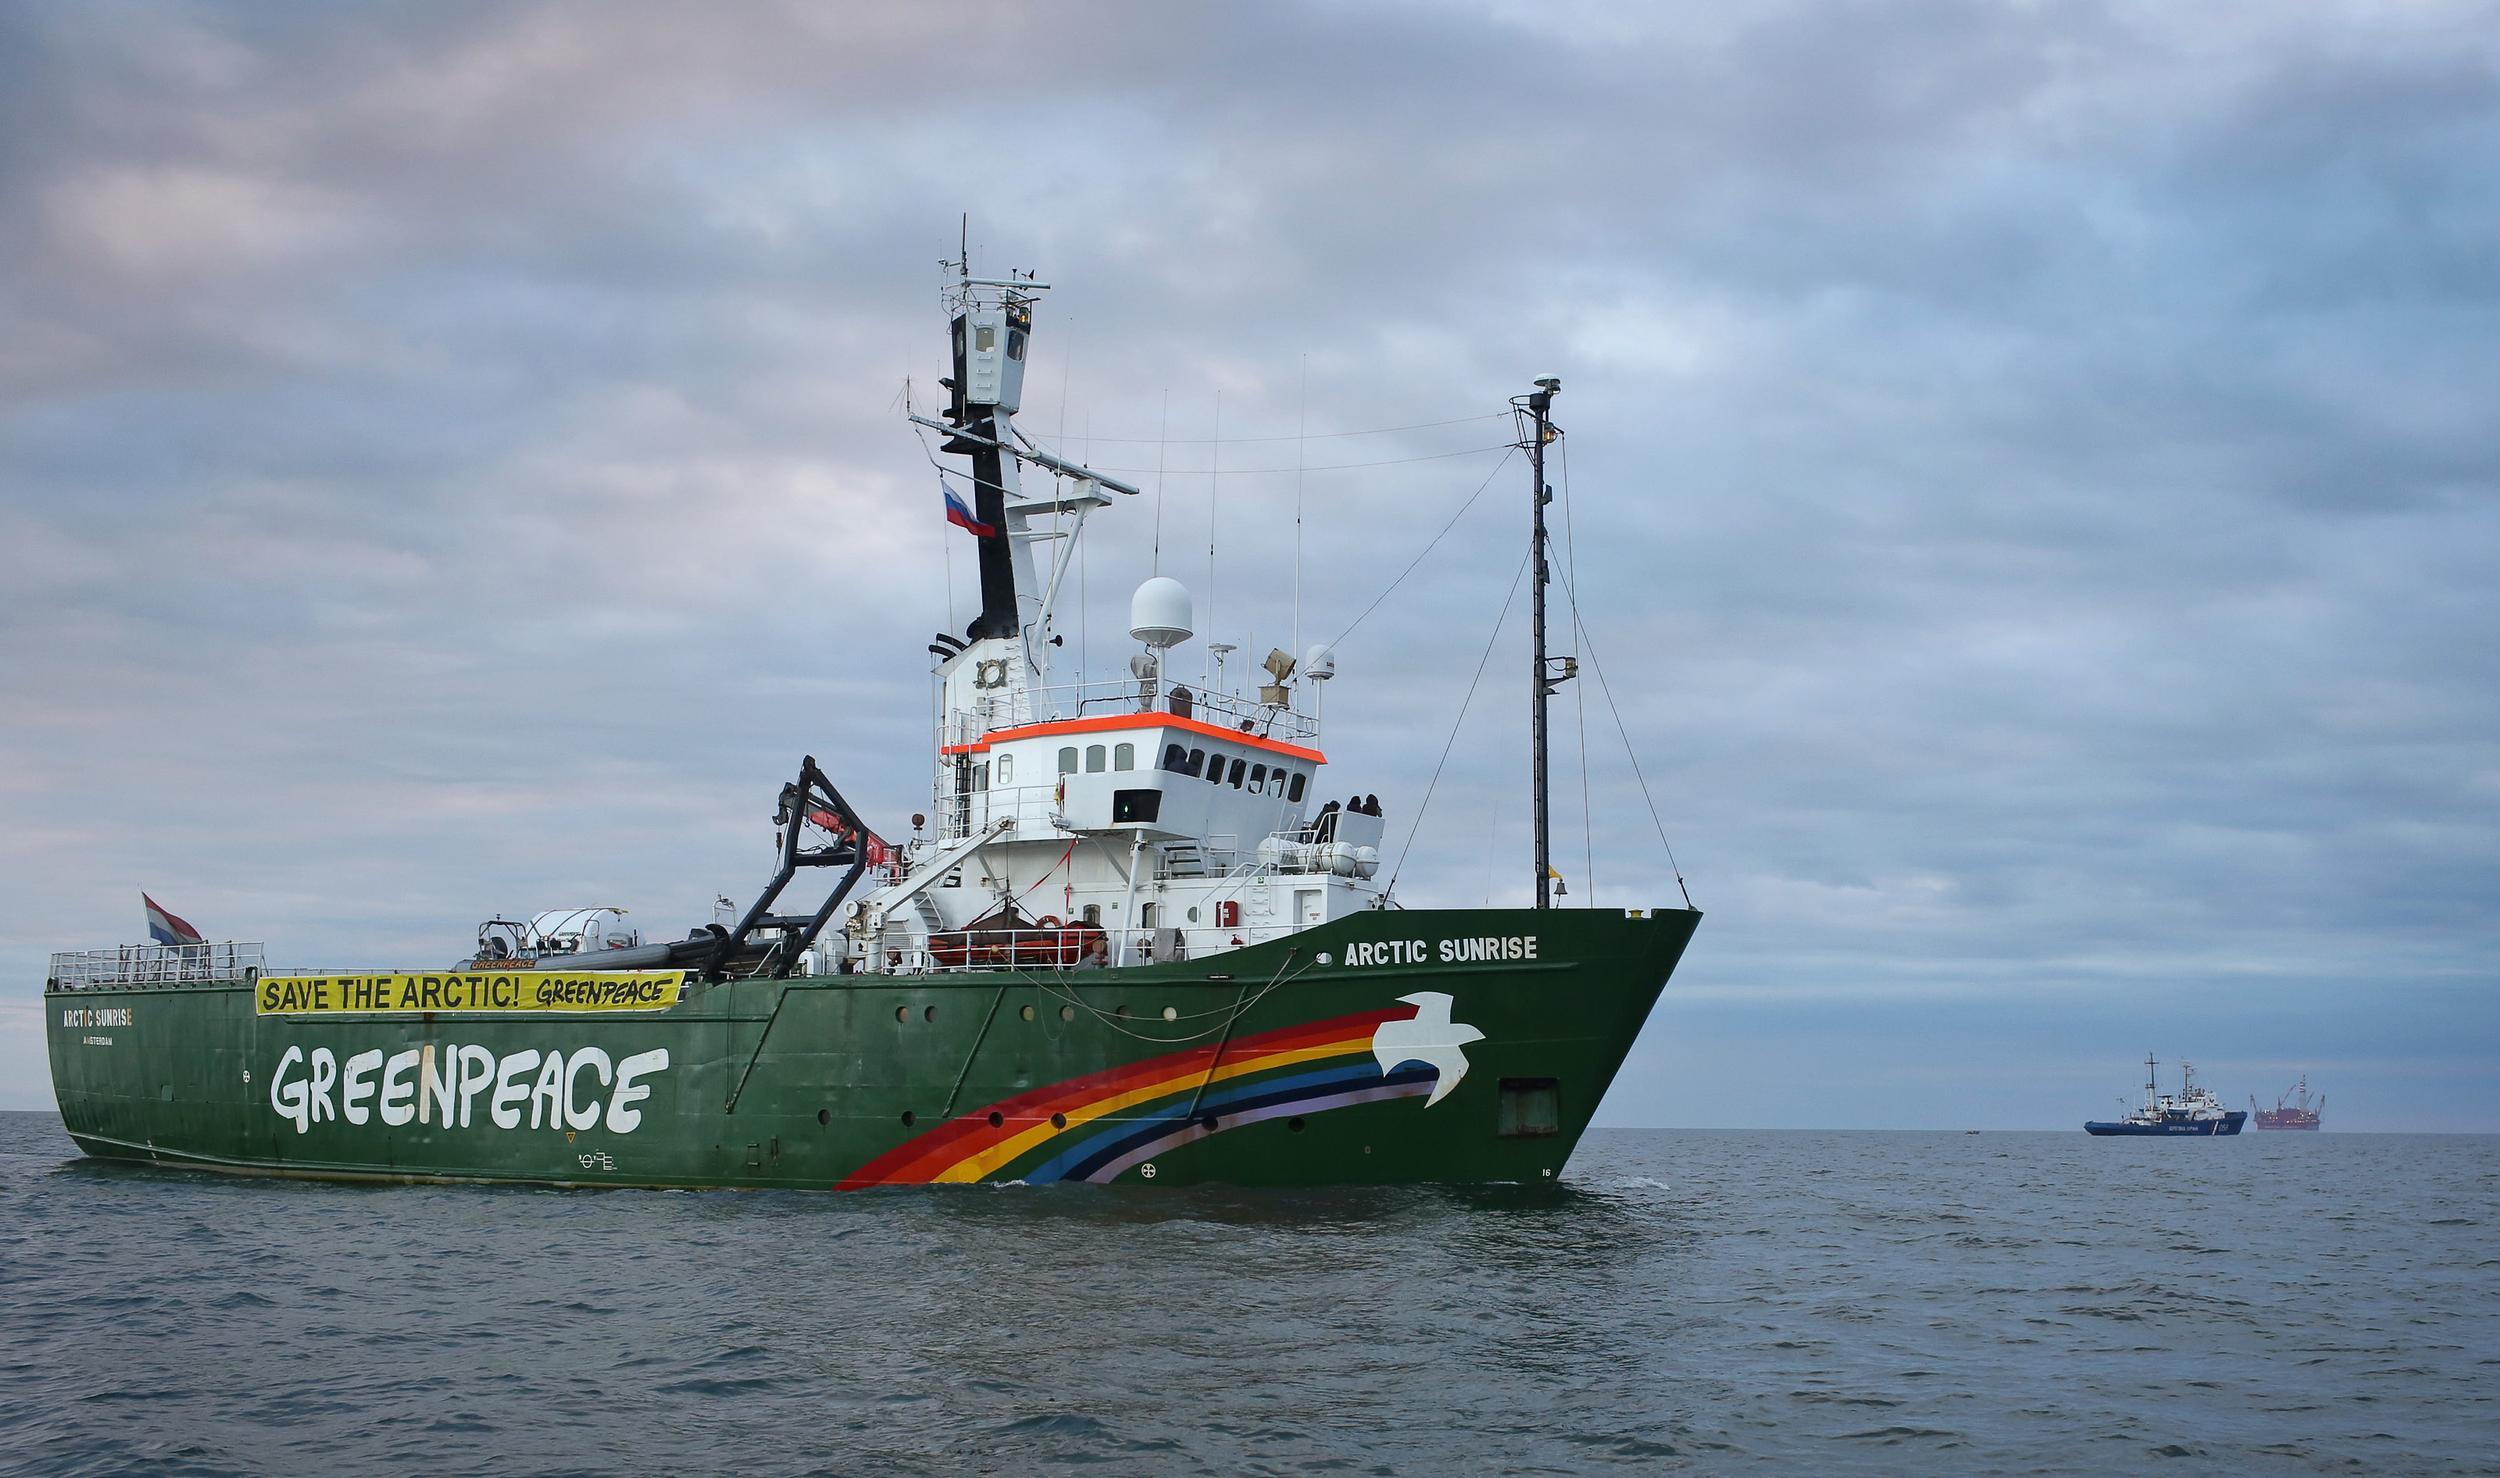 Greenpeace's Arctic Sunrise vessel